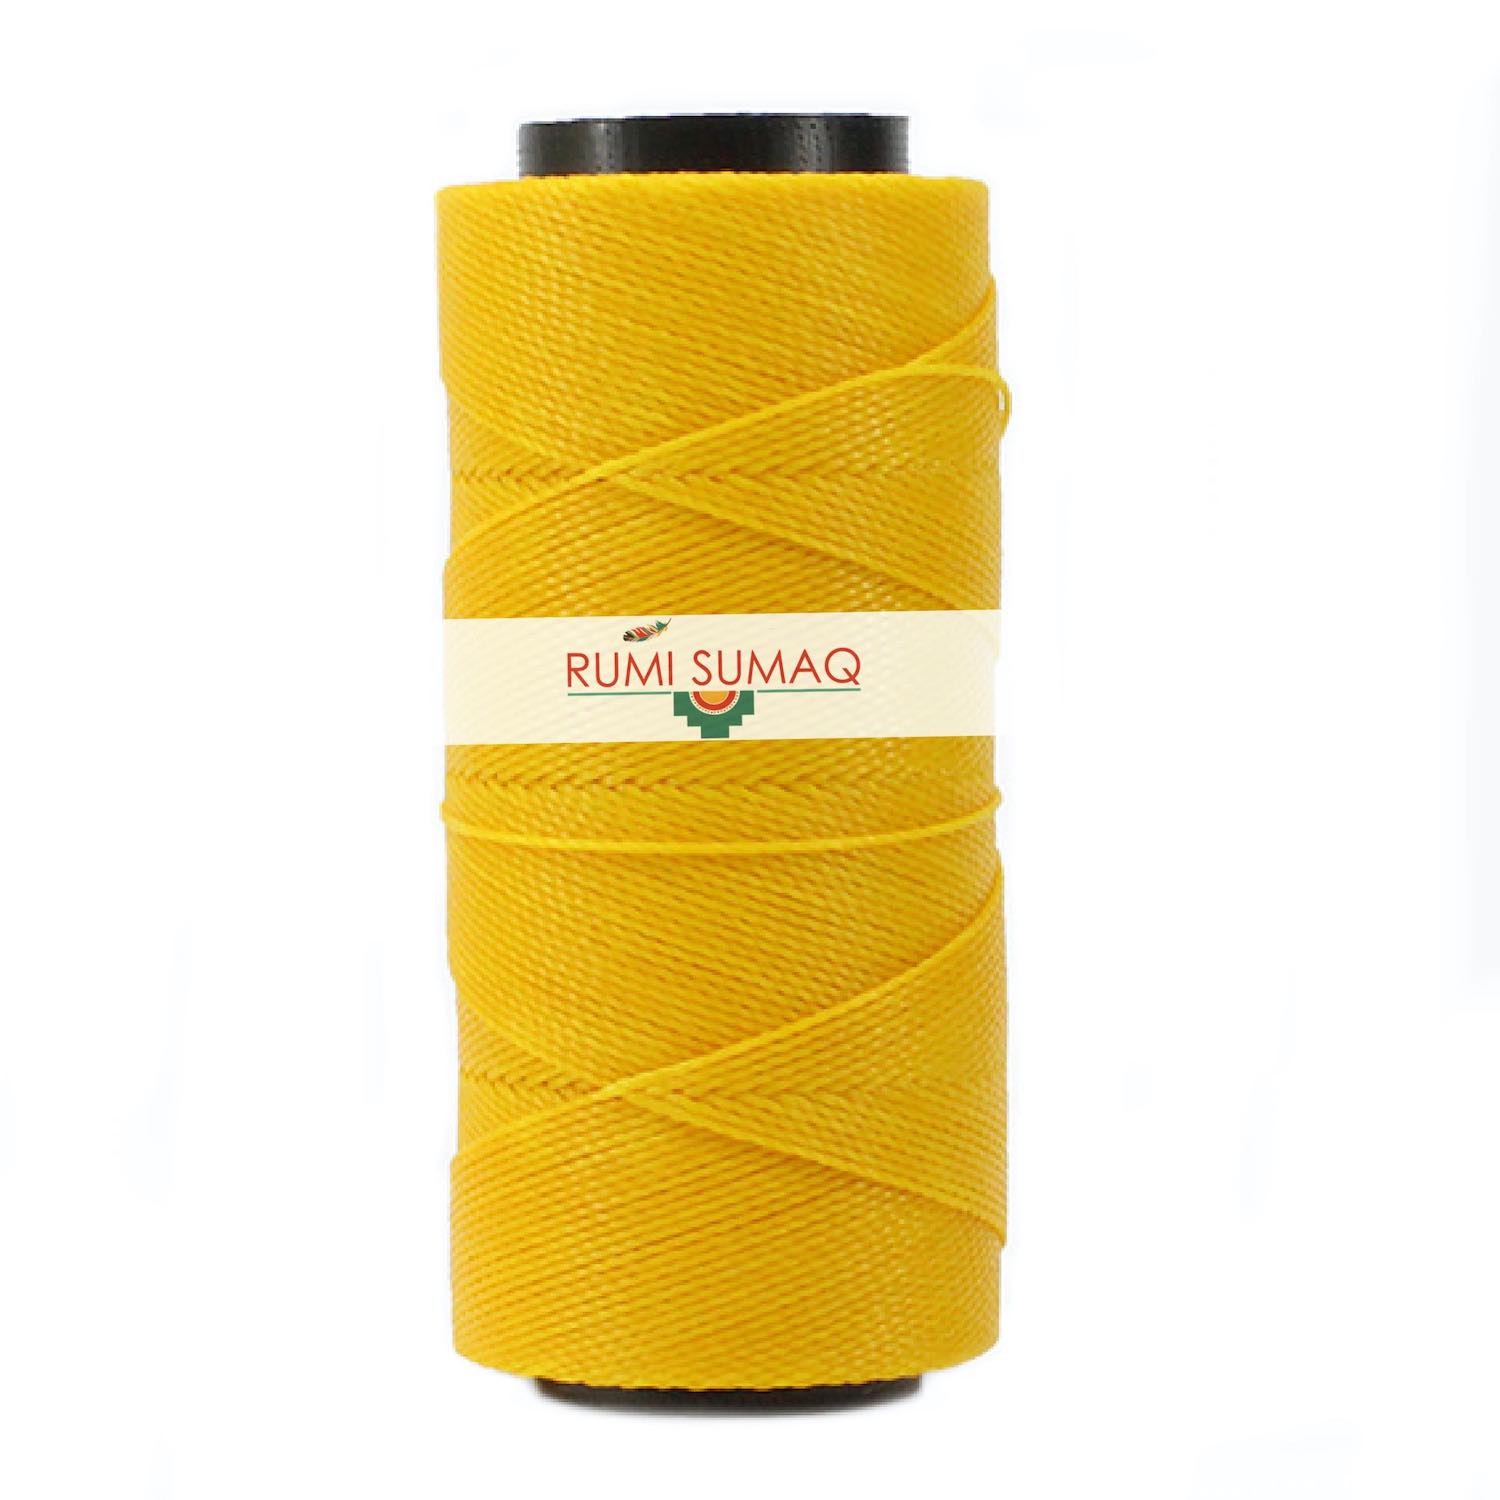 Settanyl 02-218 Marigold Yellow Waxed Polyester Cord 1mm Waxed Thread | RUMI SUMAQ